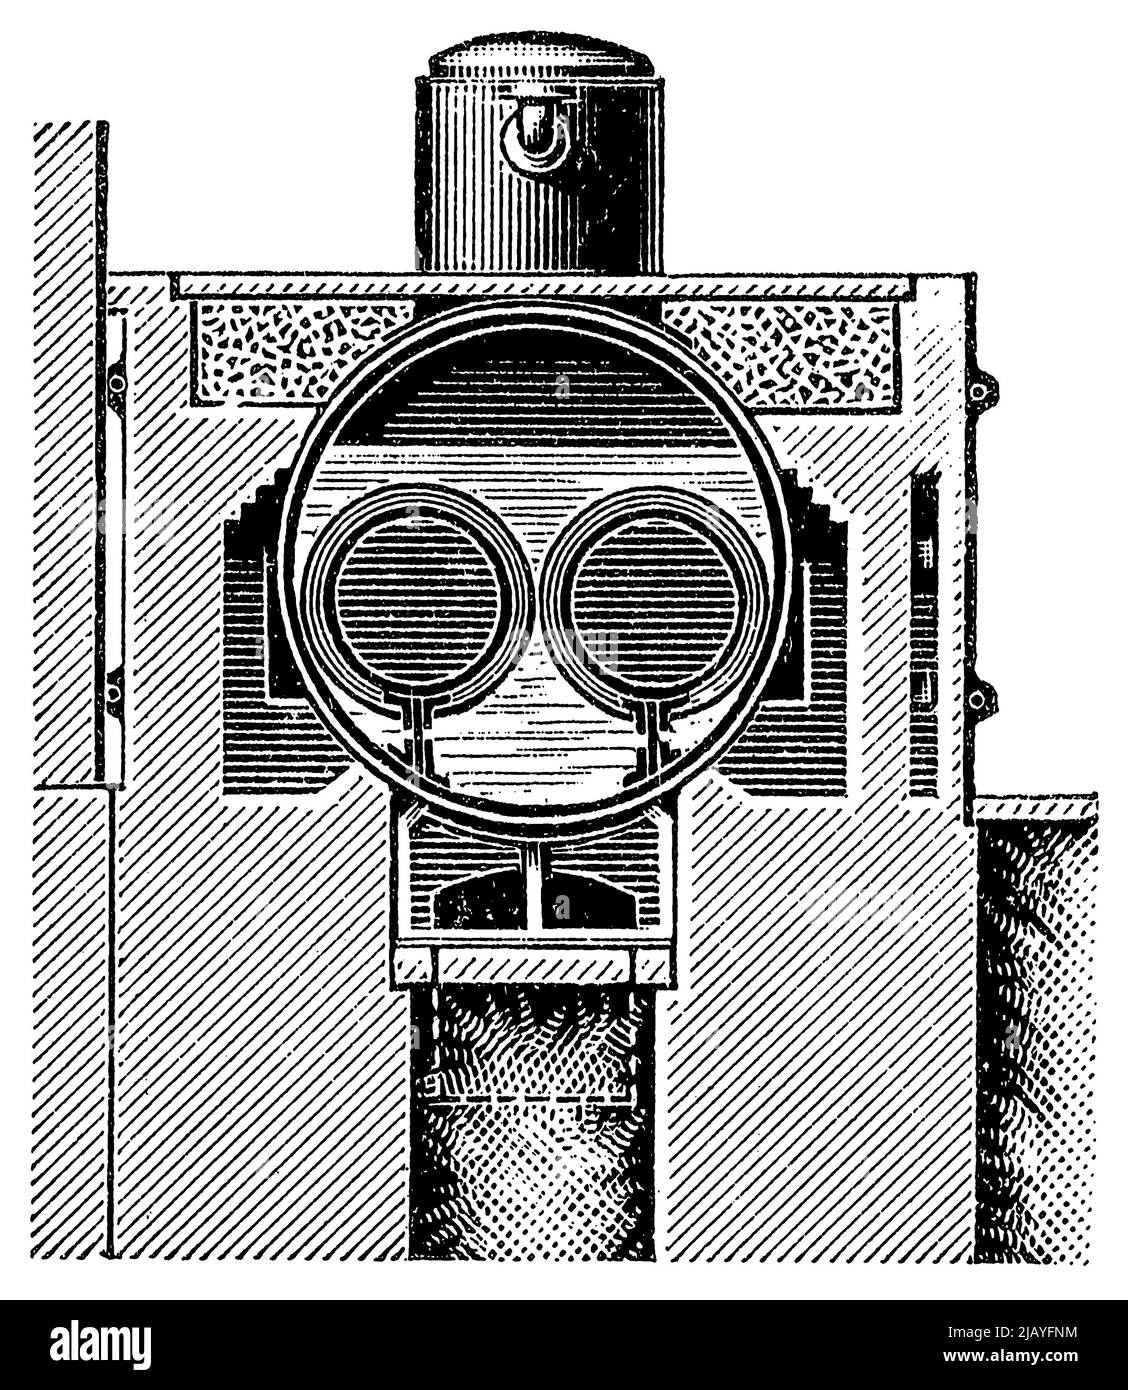 Chaudière à deux conduits, vue en coupe. Publication du livre 'Meyers Konversations-Lexikon', Volume 2, Leipzig, Allemagne, 1910 Banque D'Images